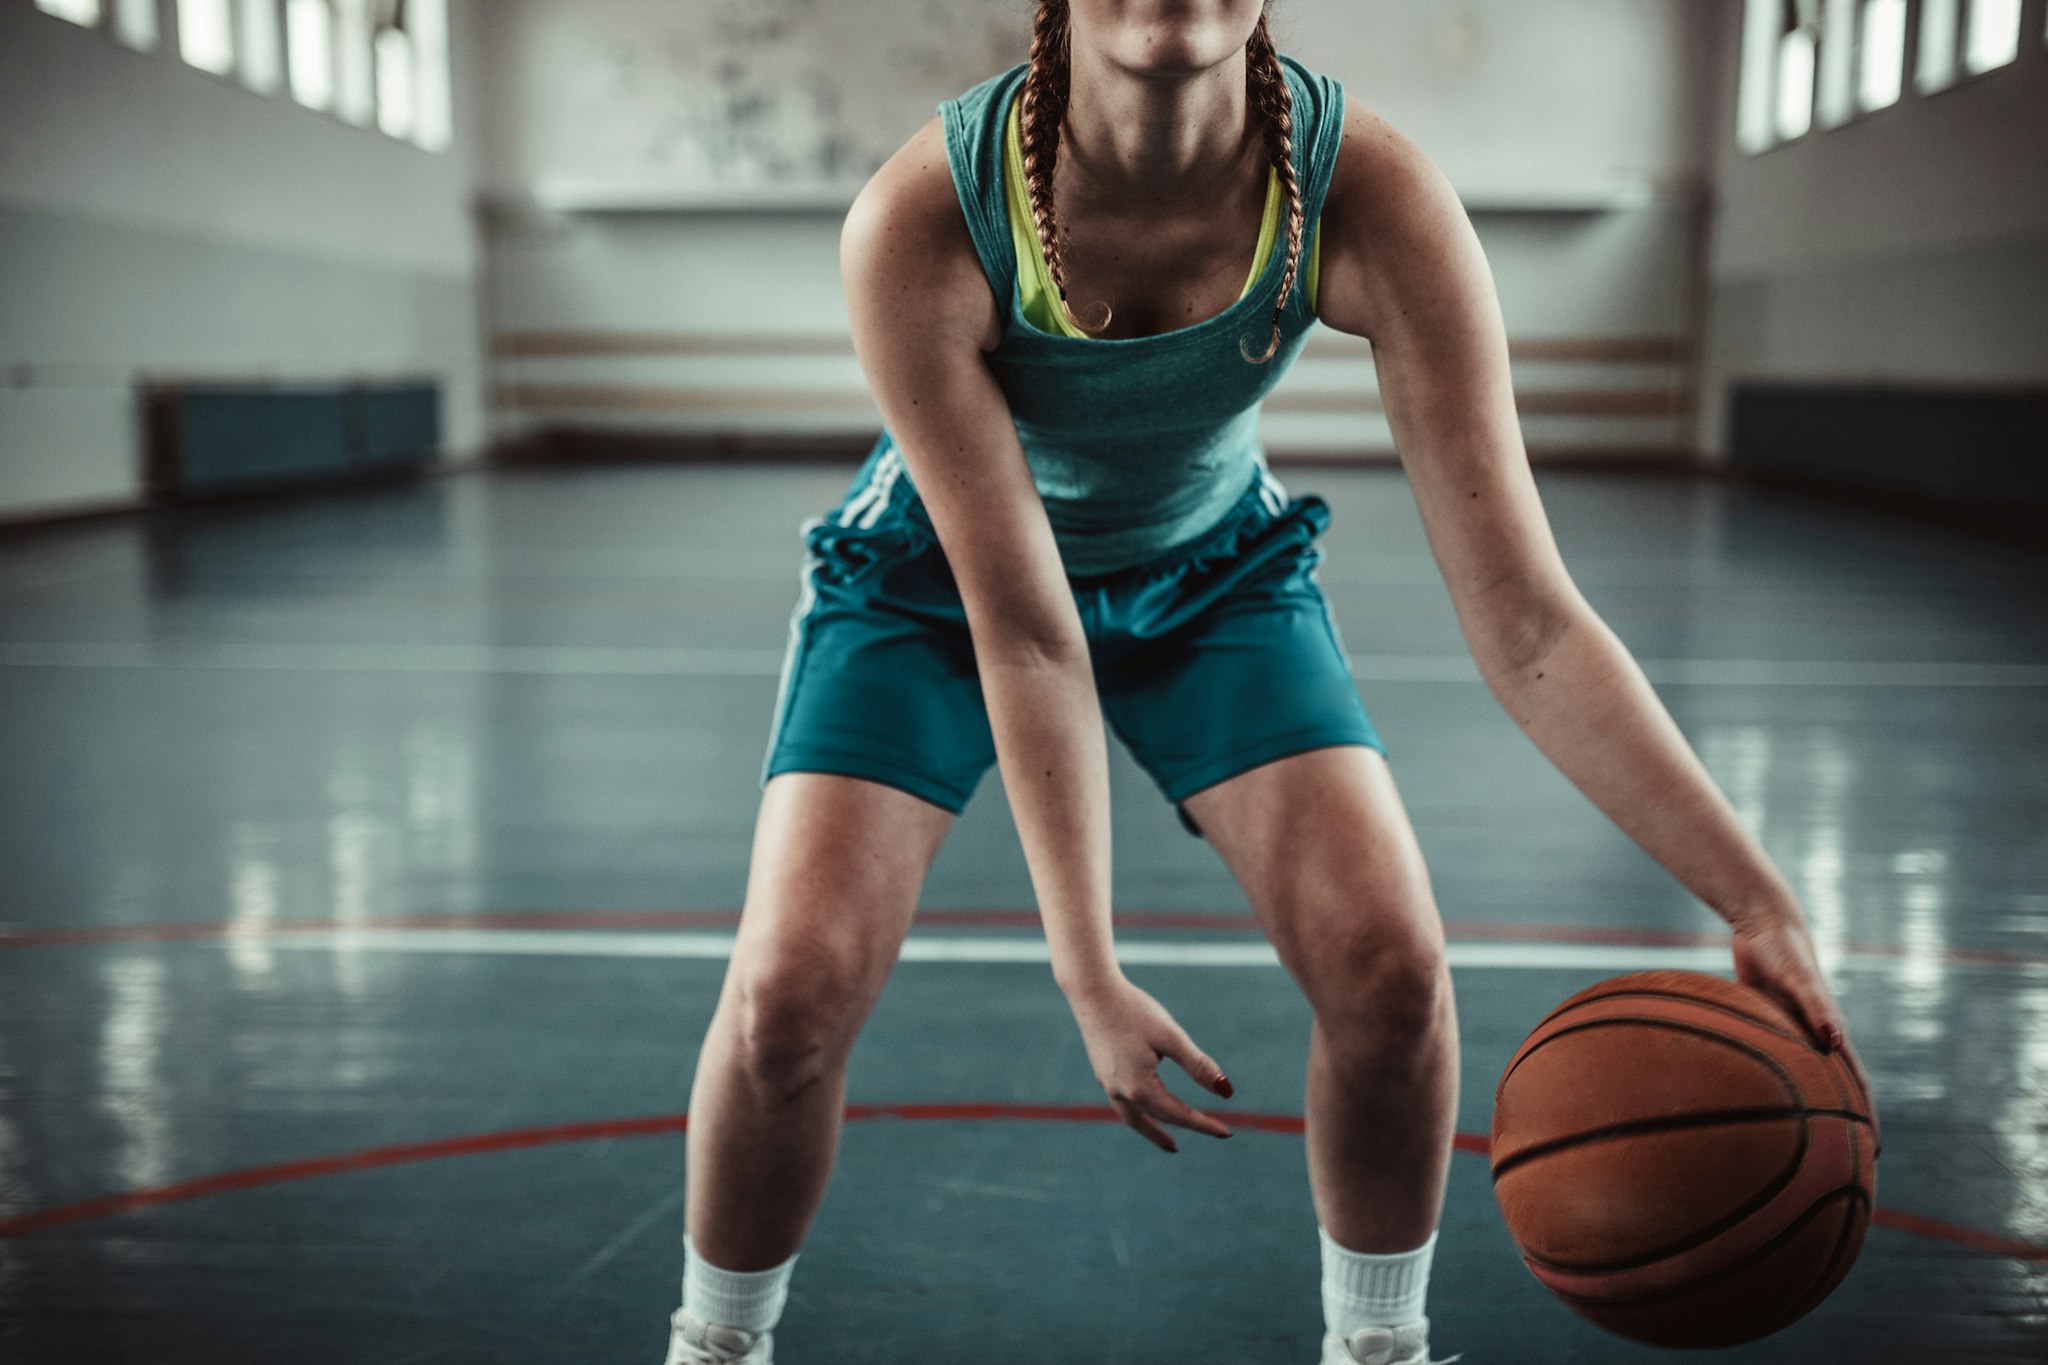 Girl basketball